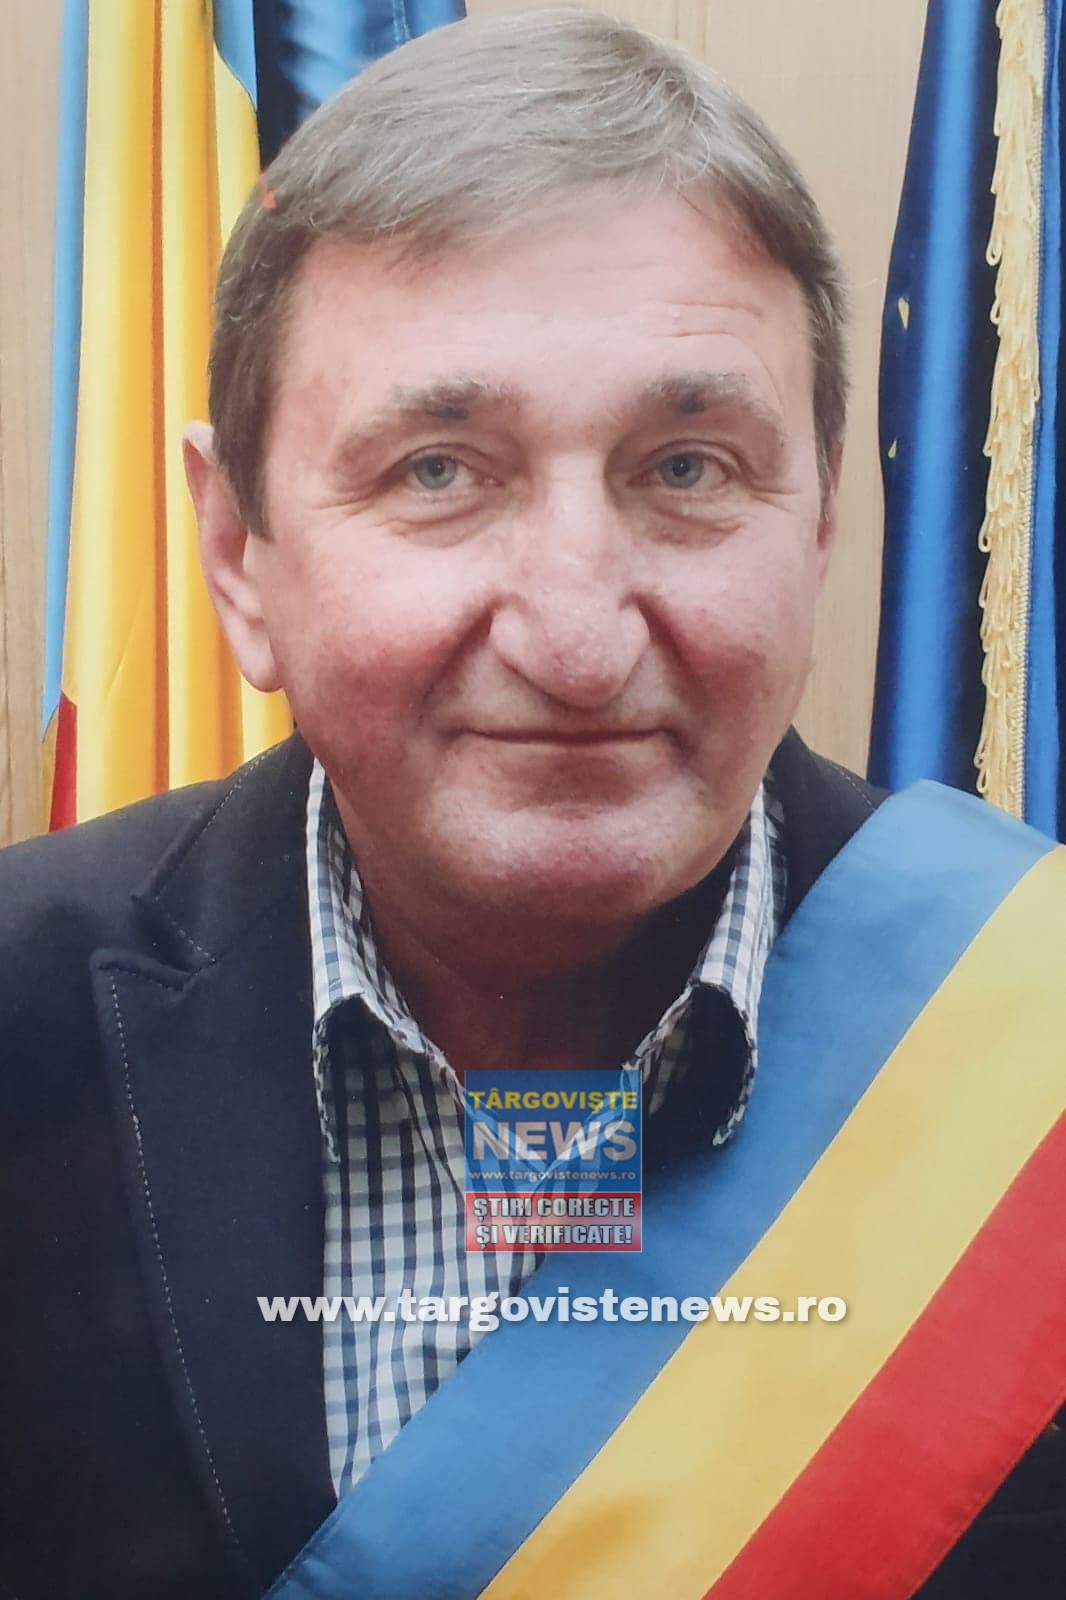 Ce veste cumplită! S-a stins din viaţă un om extraordinar, primarul comunei Potlogi, îndrăgitul profesor Nicolae Catrina